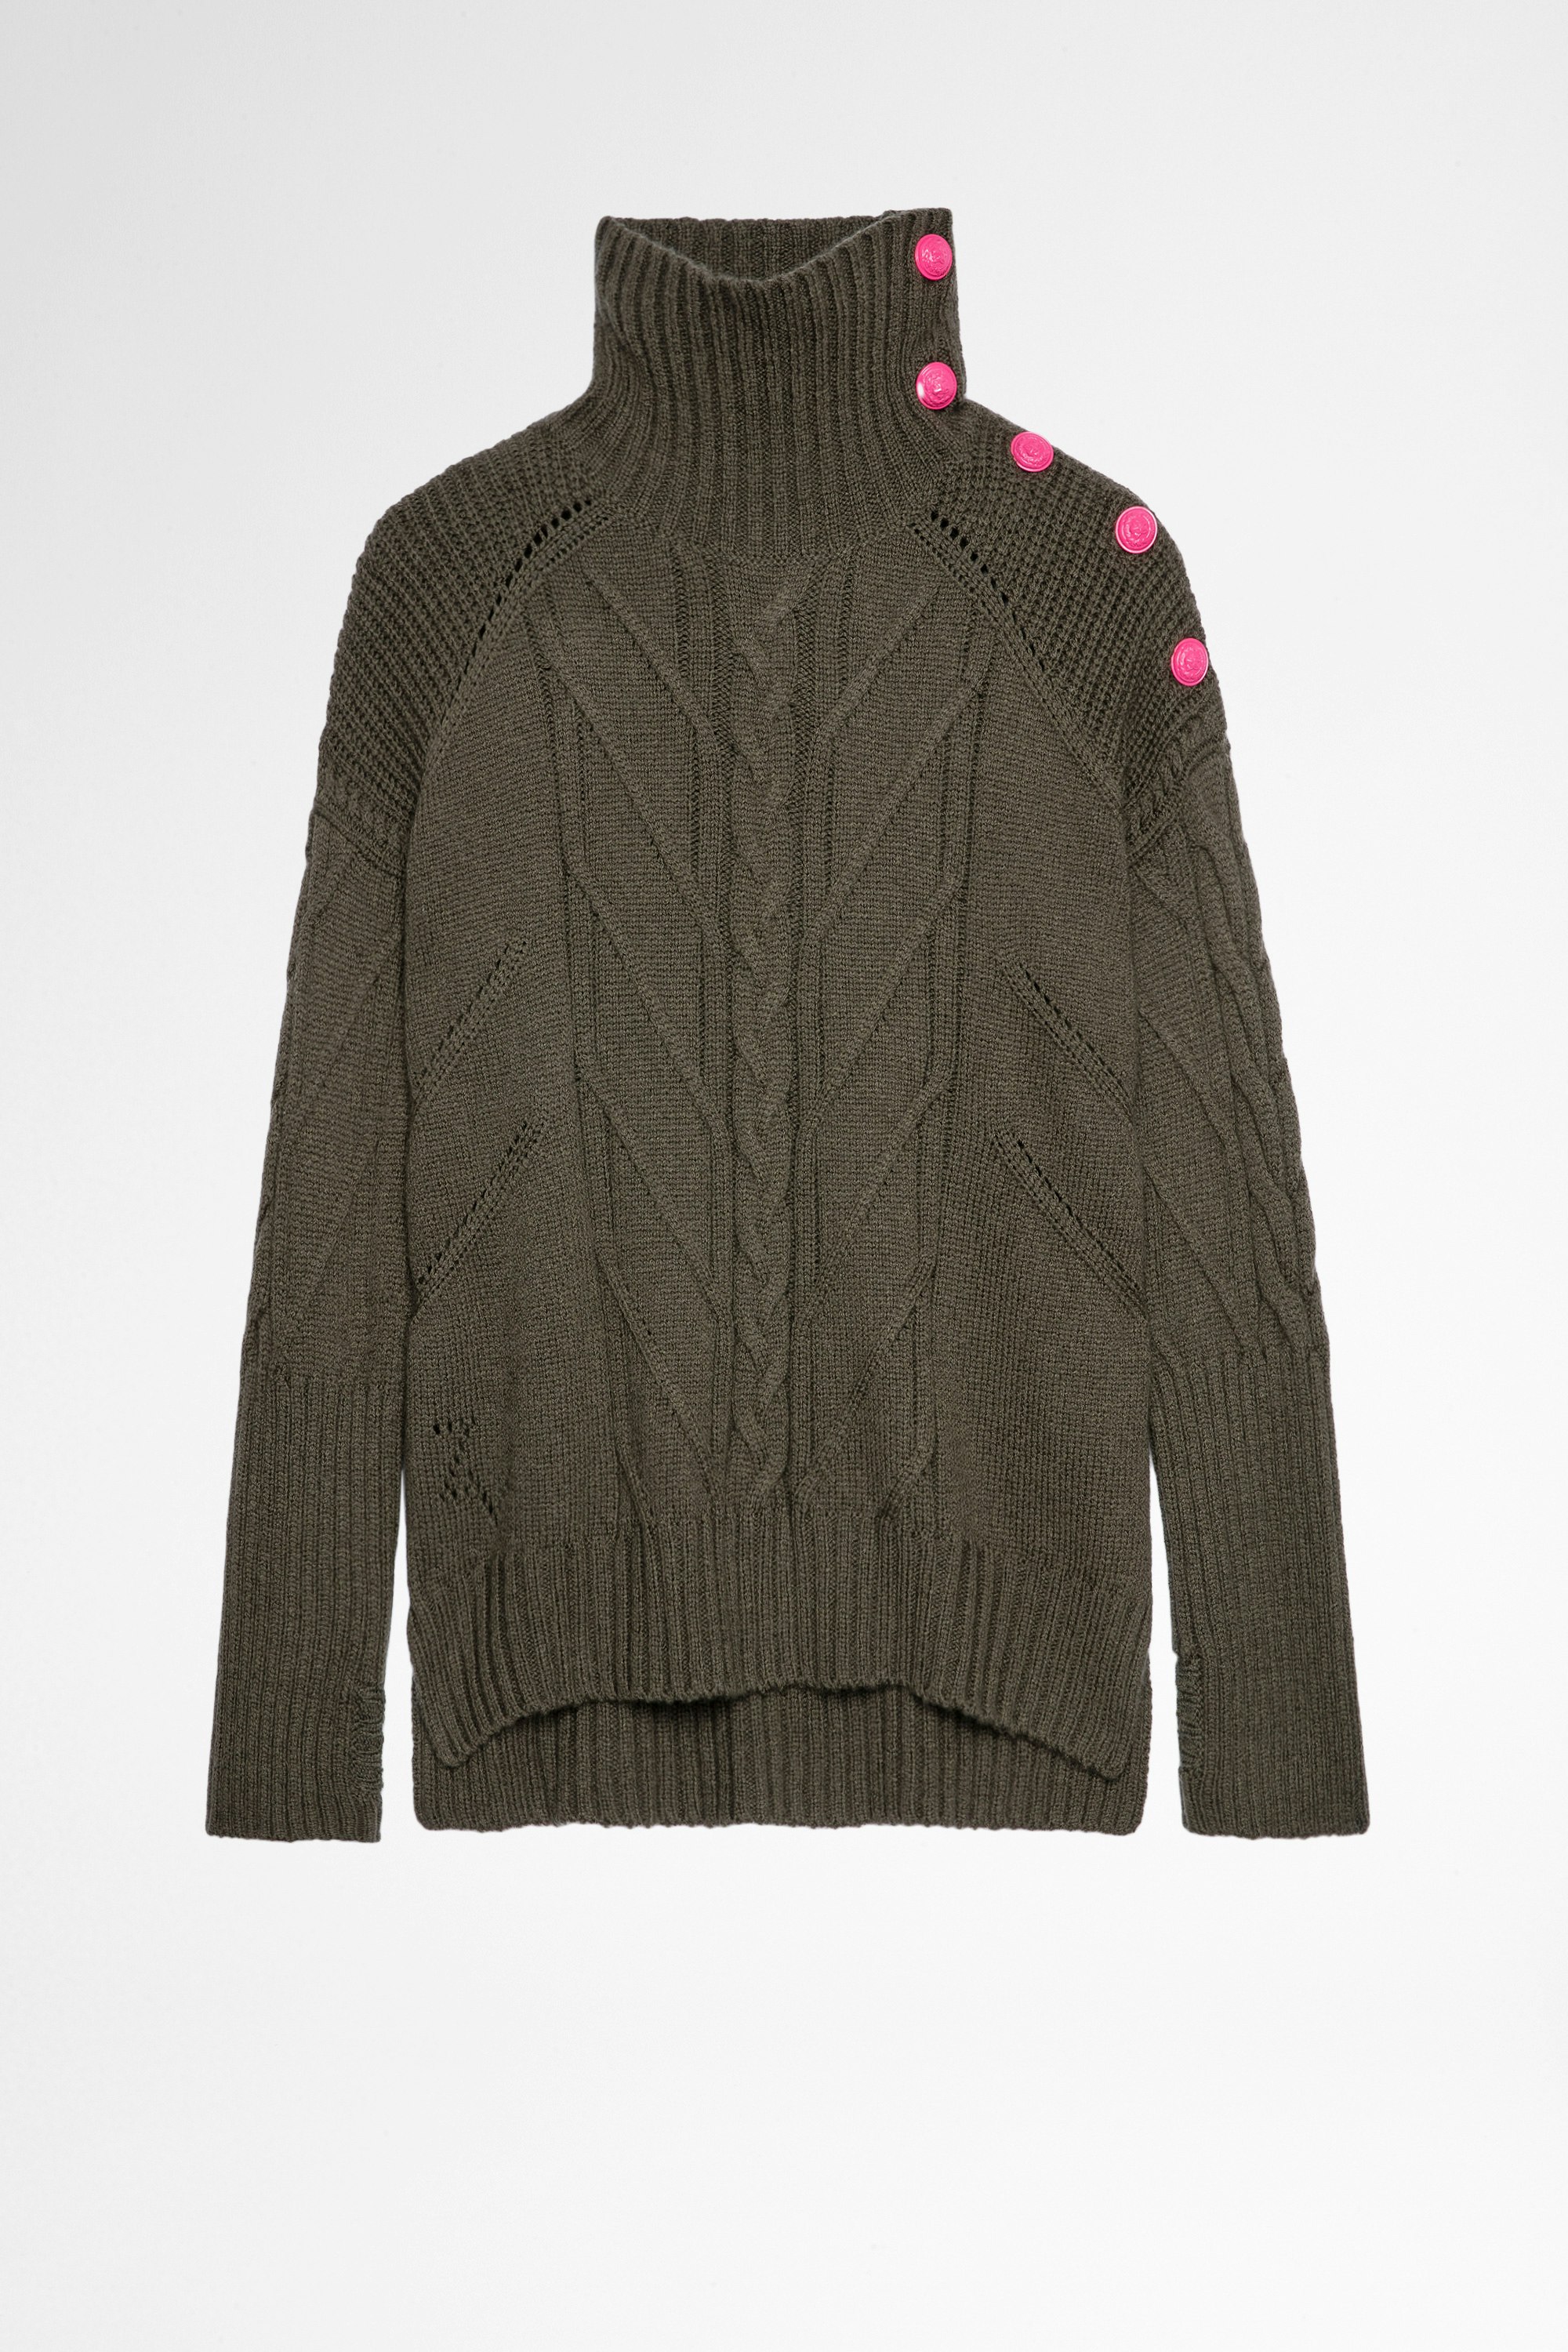 Maglione Alma Cashmere Maglia in lana e cashmere color kaki con collo alto e bottoni a contrasto